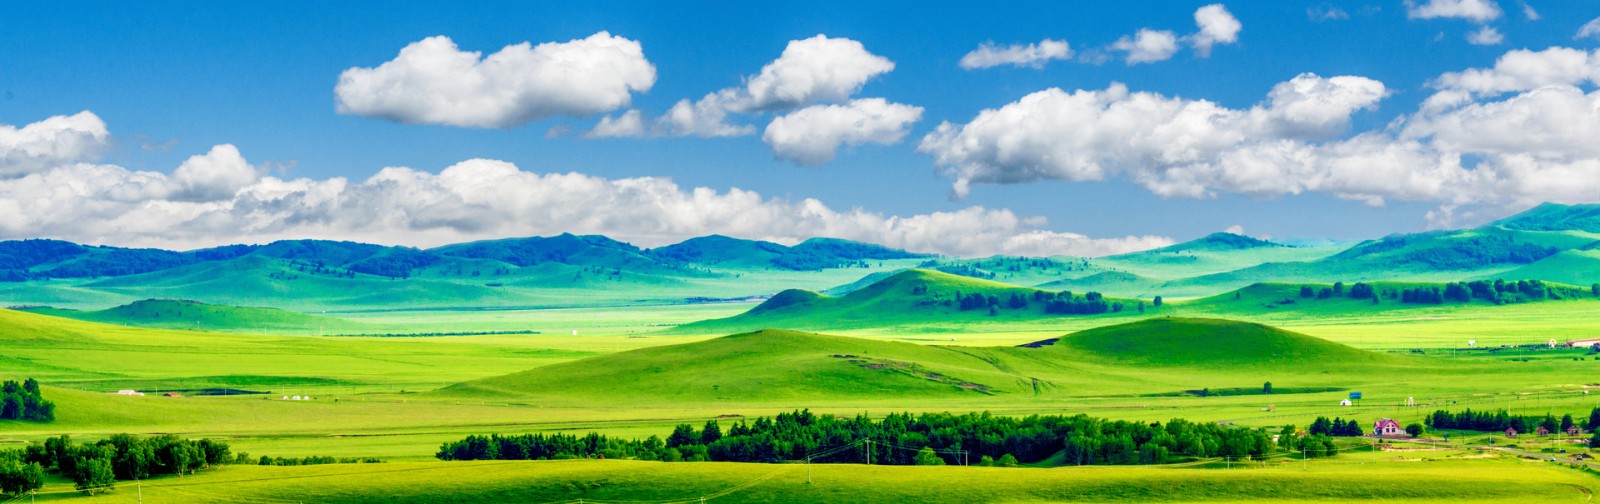 内蒙古暂停跨省团队旅游活动